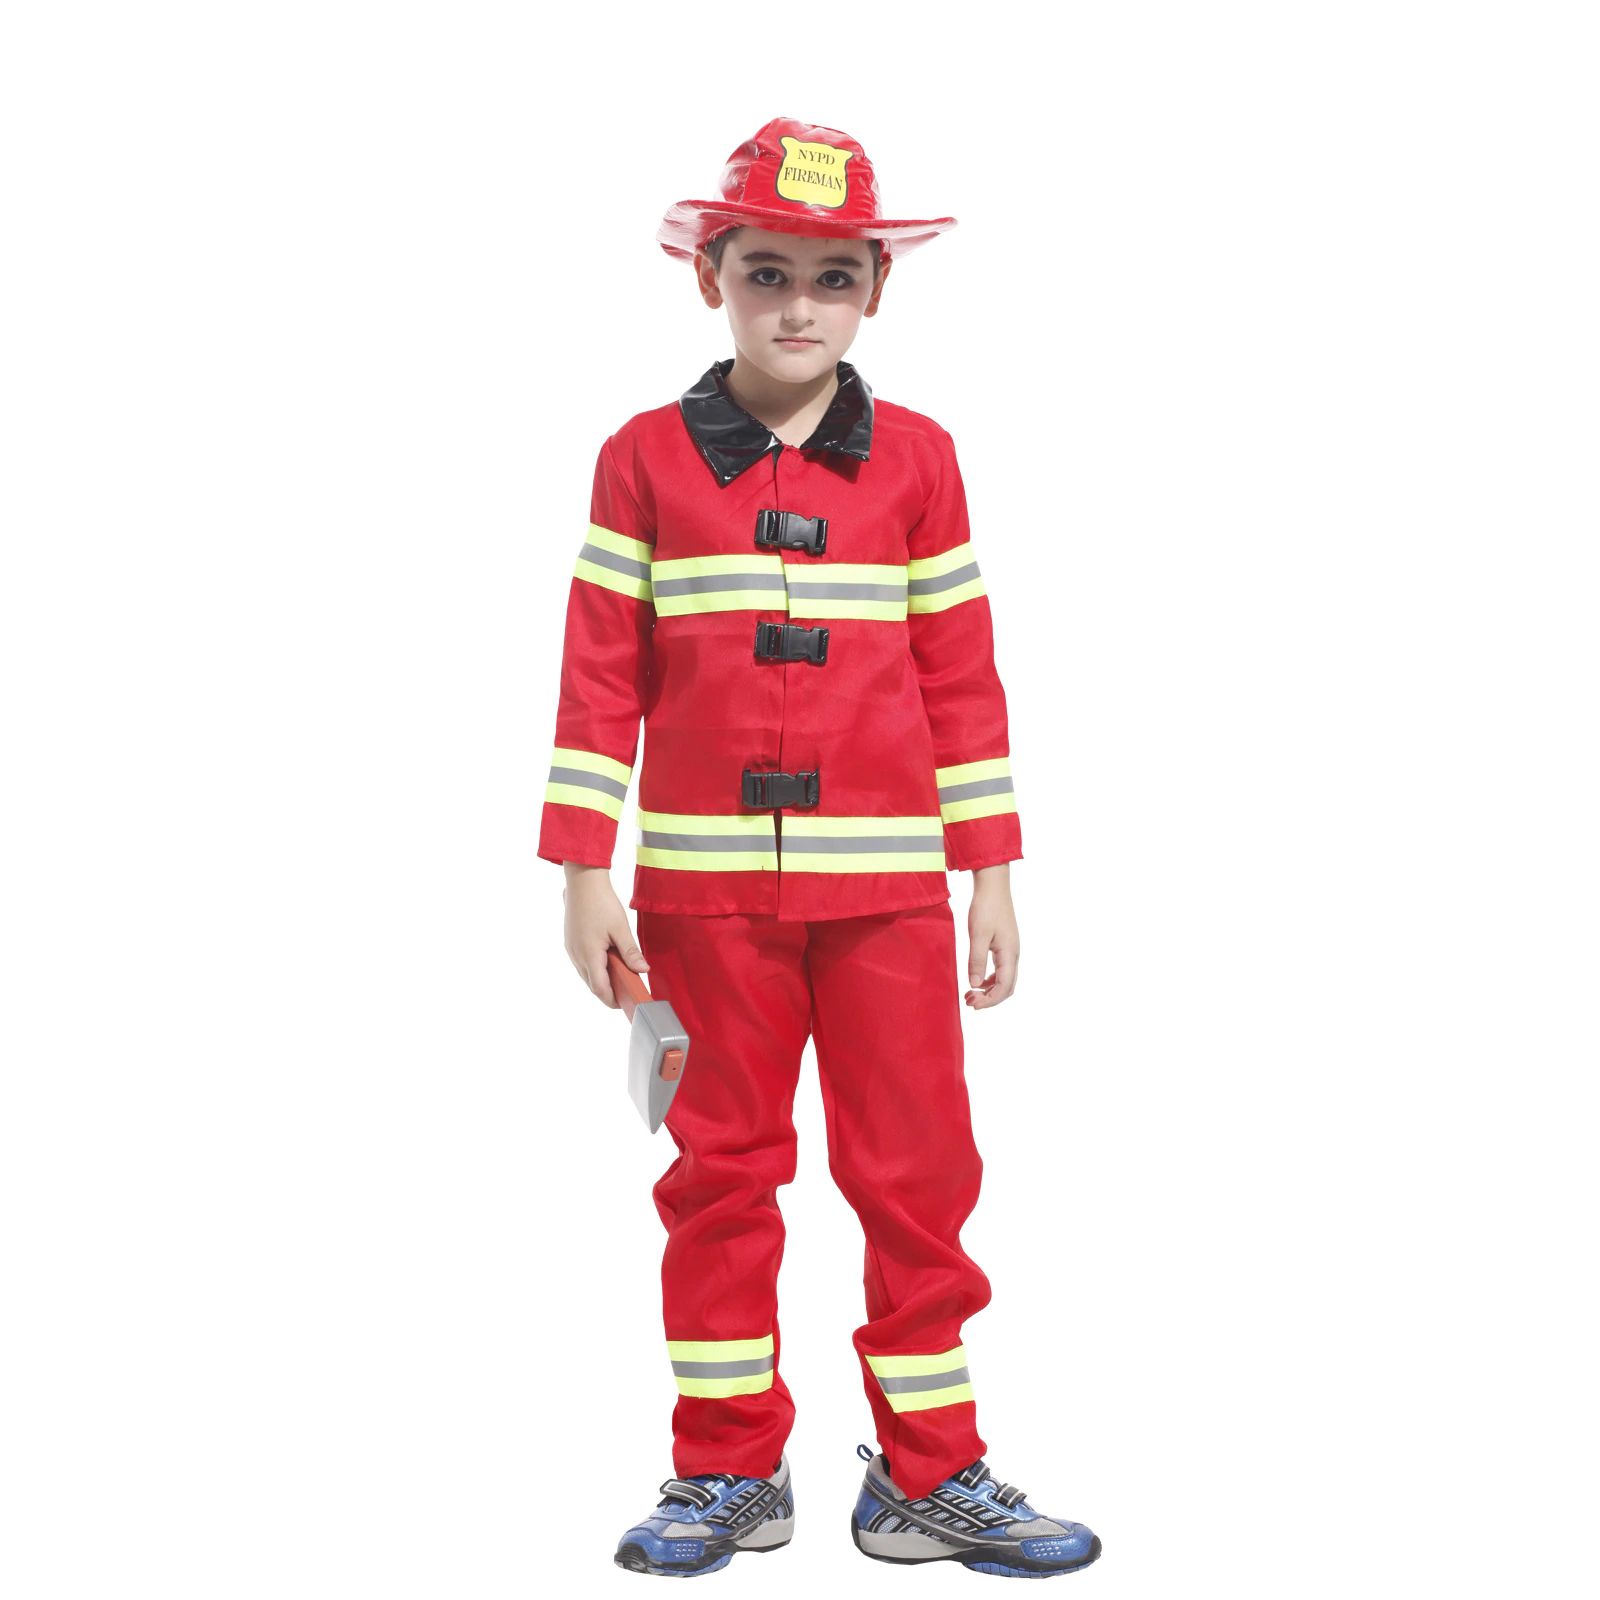 Bộ quần áo hóa trang Lính cứu hỏa Fireman sọc dạ quang cho bé chơi Halloween